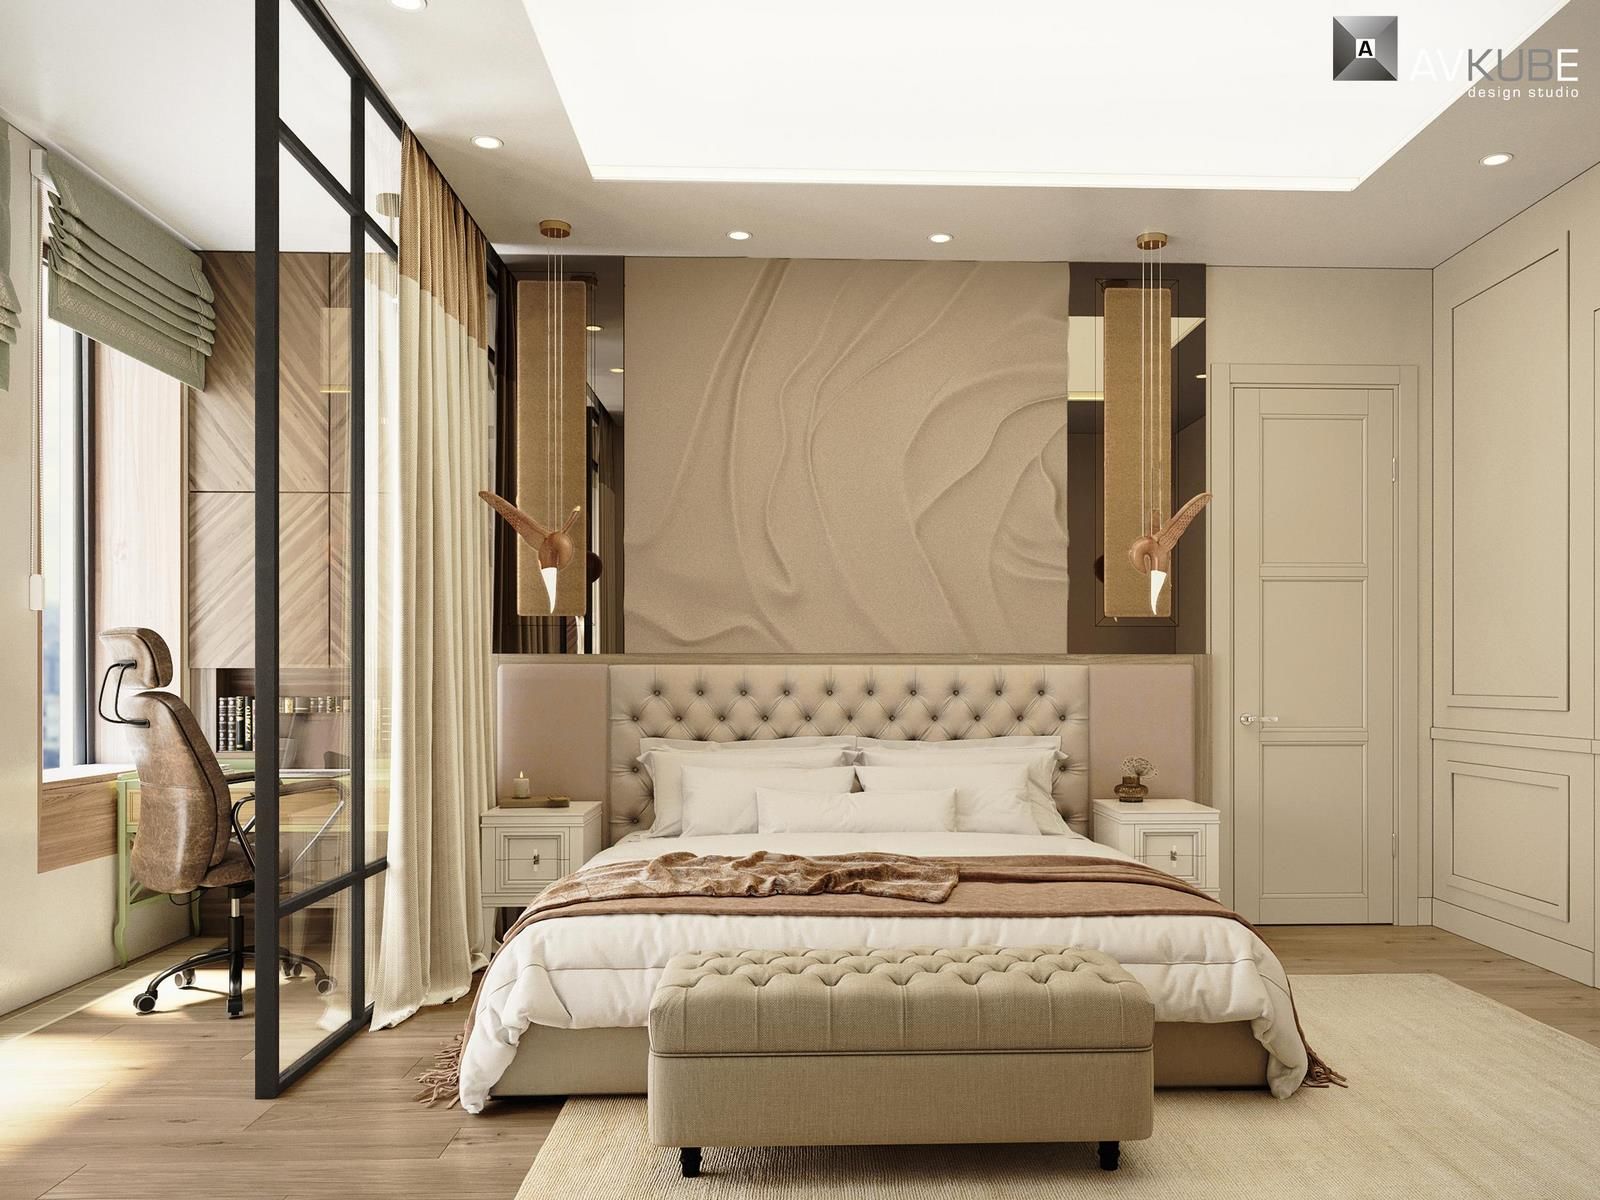 На фото – спальня в стиле прованс, отделенная перегородкой от рабочей зоны, дизайн проект «АвКубе»